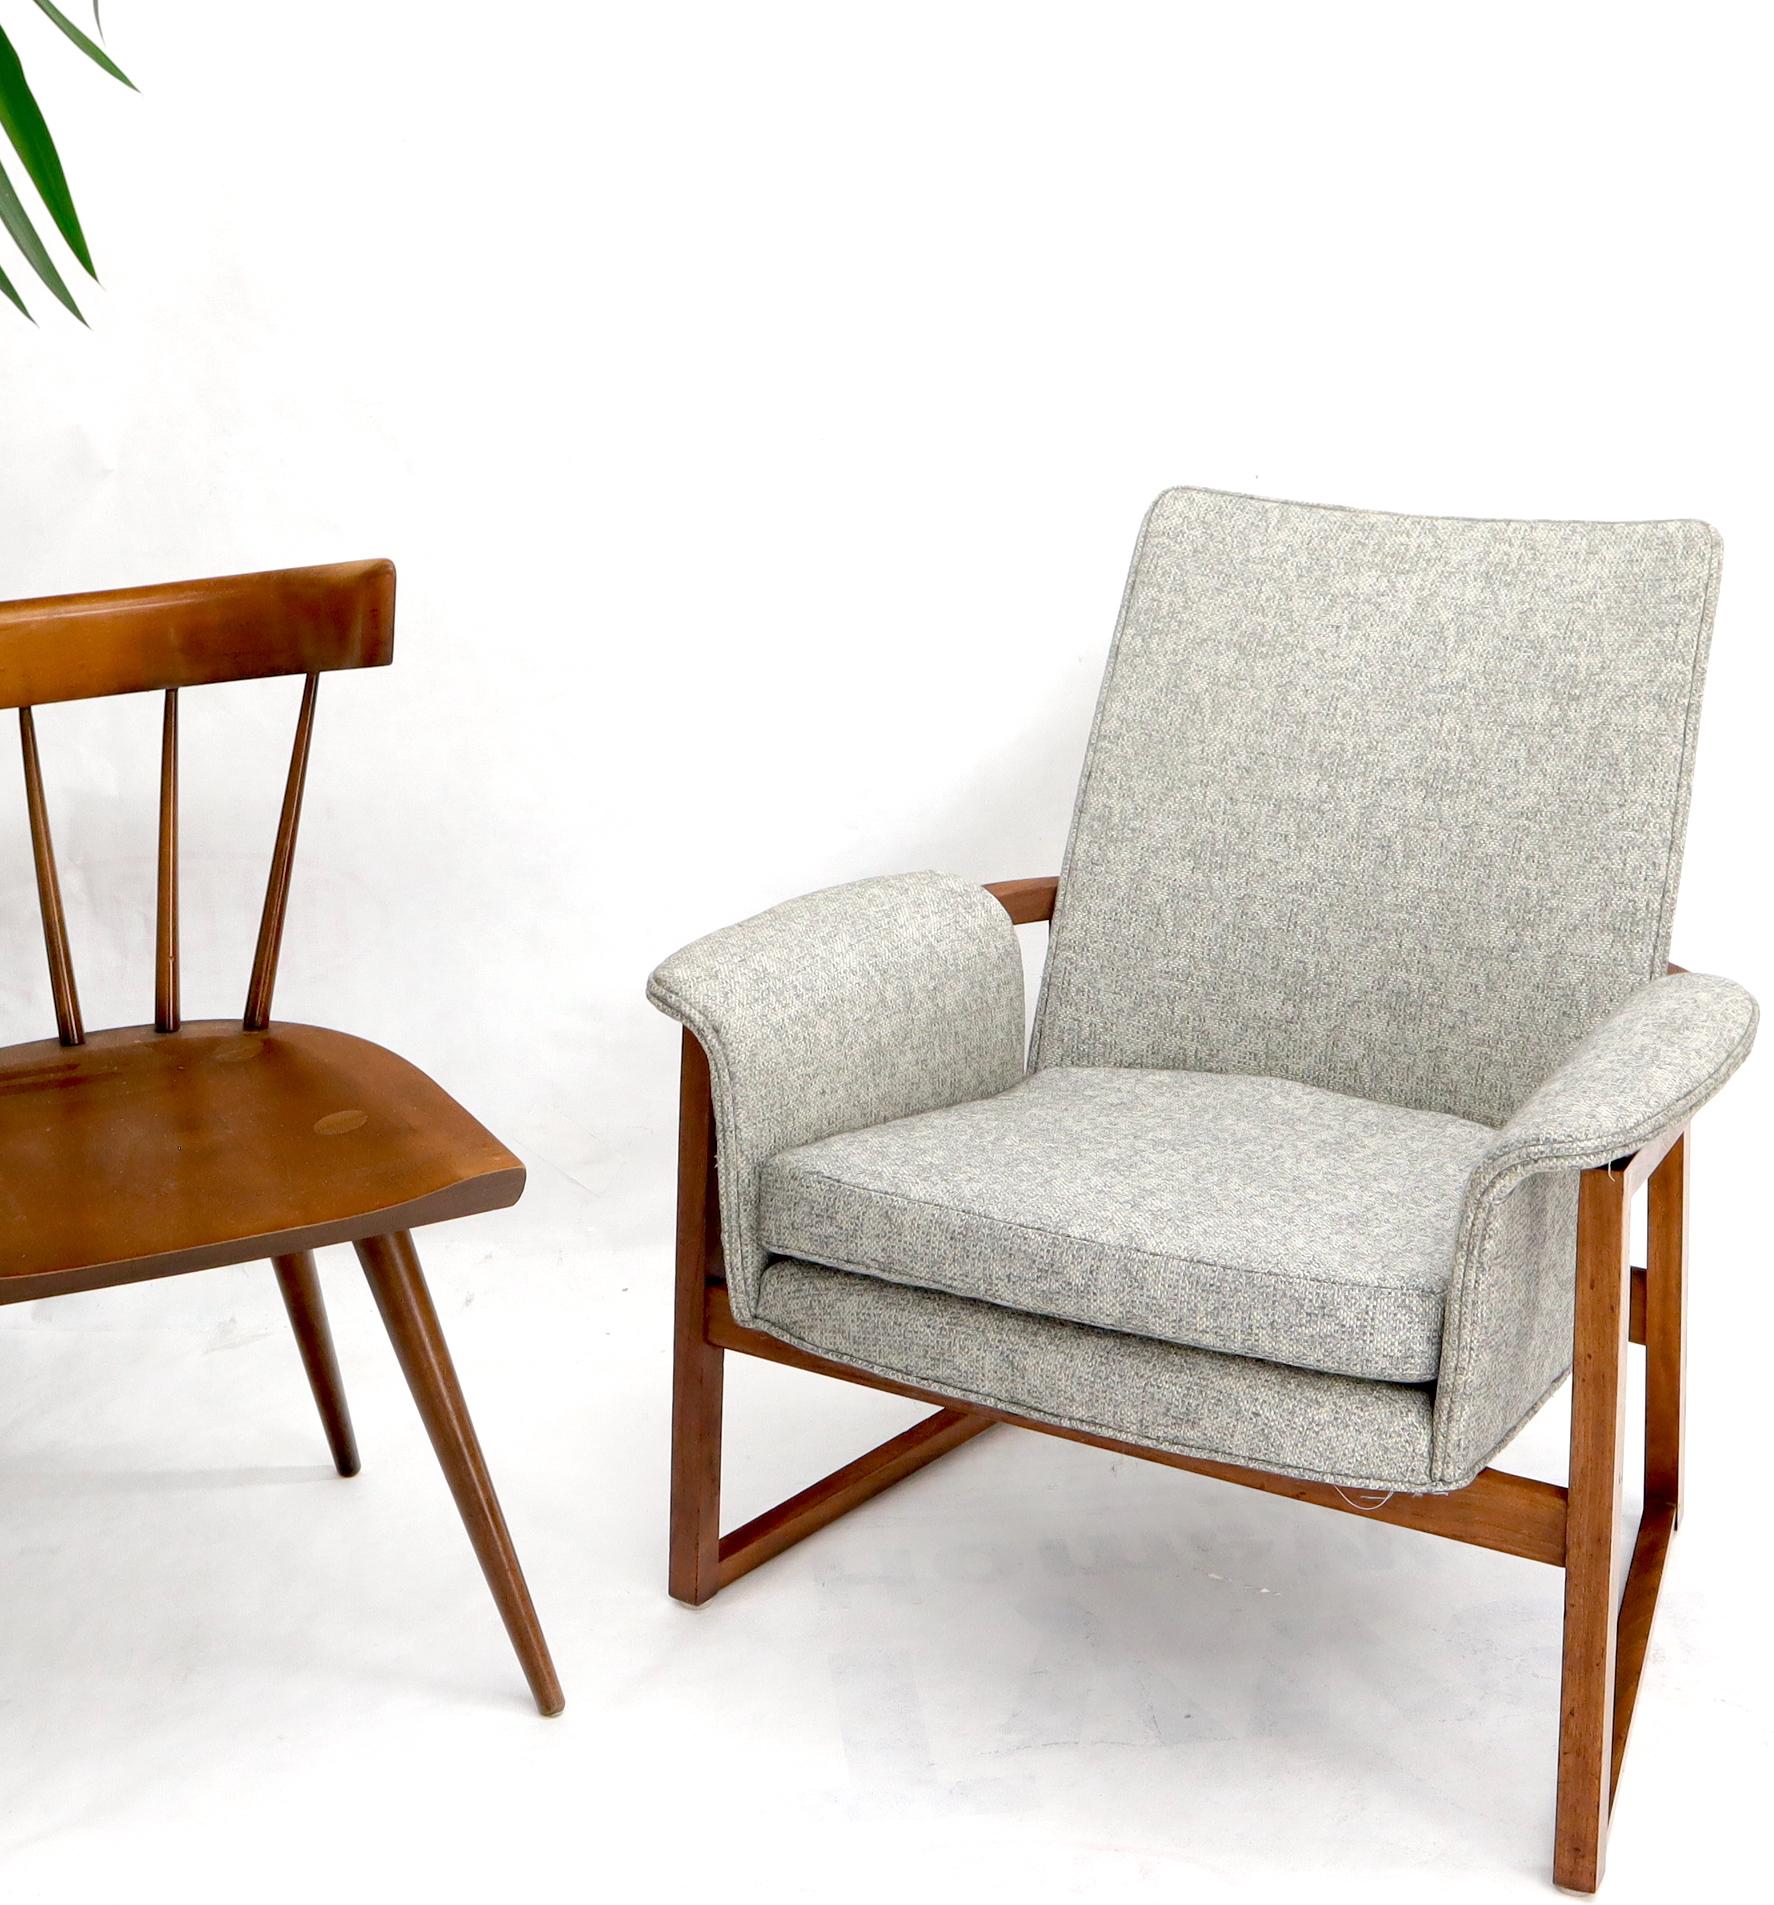 Dänischer Mid-Century Modern Lounge Chair aus Teakholz in Fassform, neu gepolstert mit silberfarbenem Korbgeflecht. Ähnliche oder gemeinsame Designlinien des umlaufenden Teakholzrahmens des Stuhls Elizabeth von Kofod-Larsen.